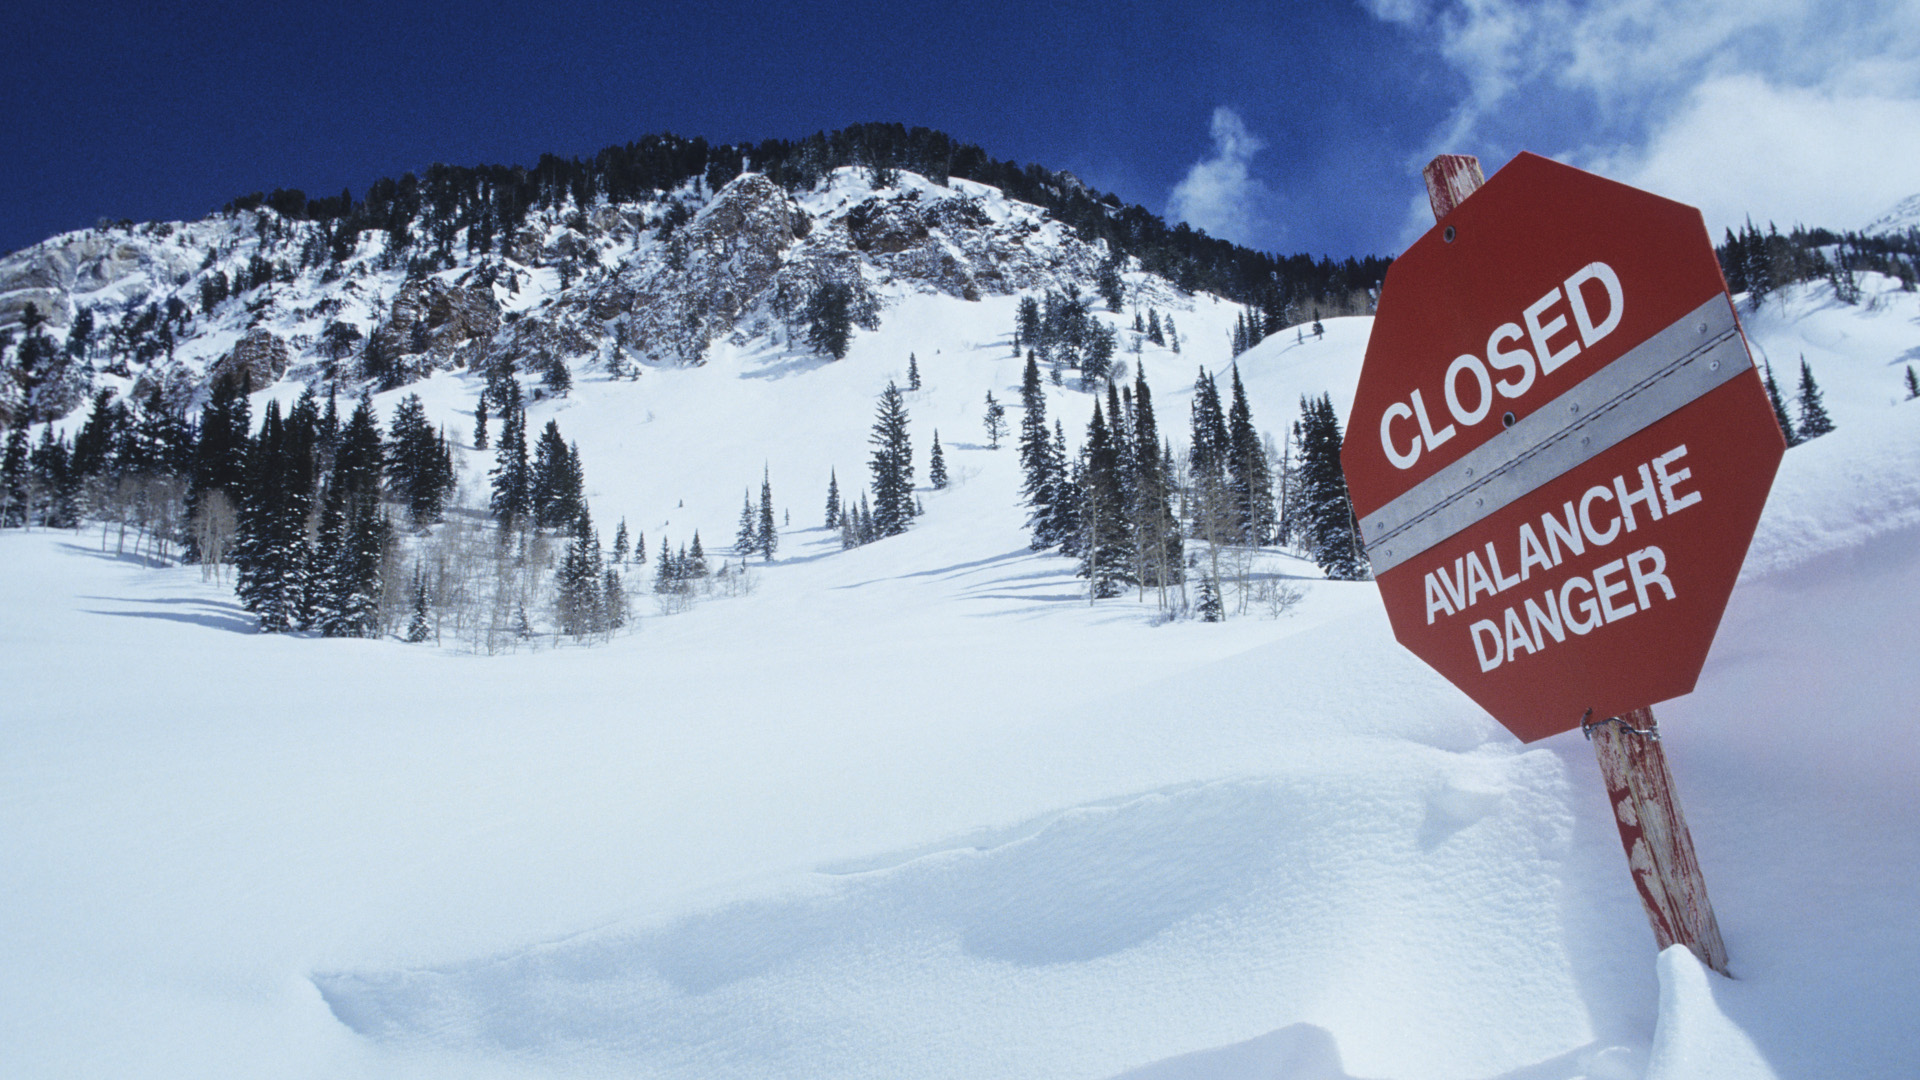 Una señal de peligro de avalanchas en la nieve profunda en una estación de esquí